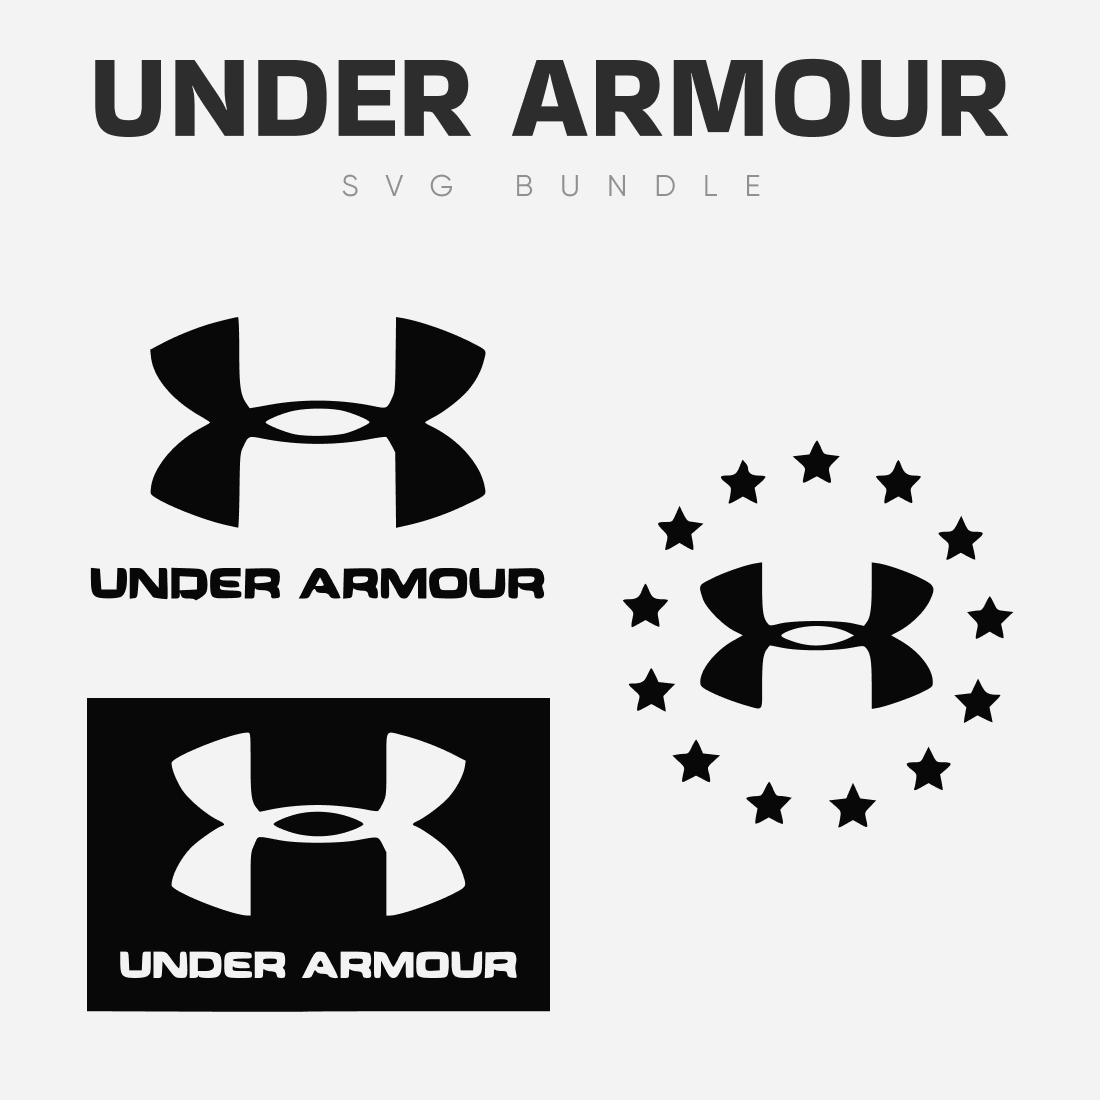 Under Armour SVG Bundle –